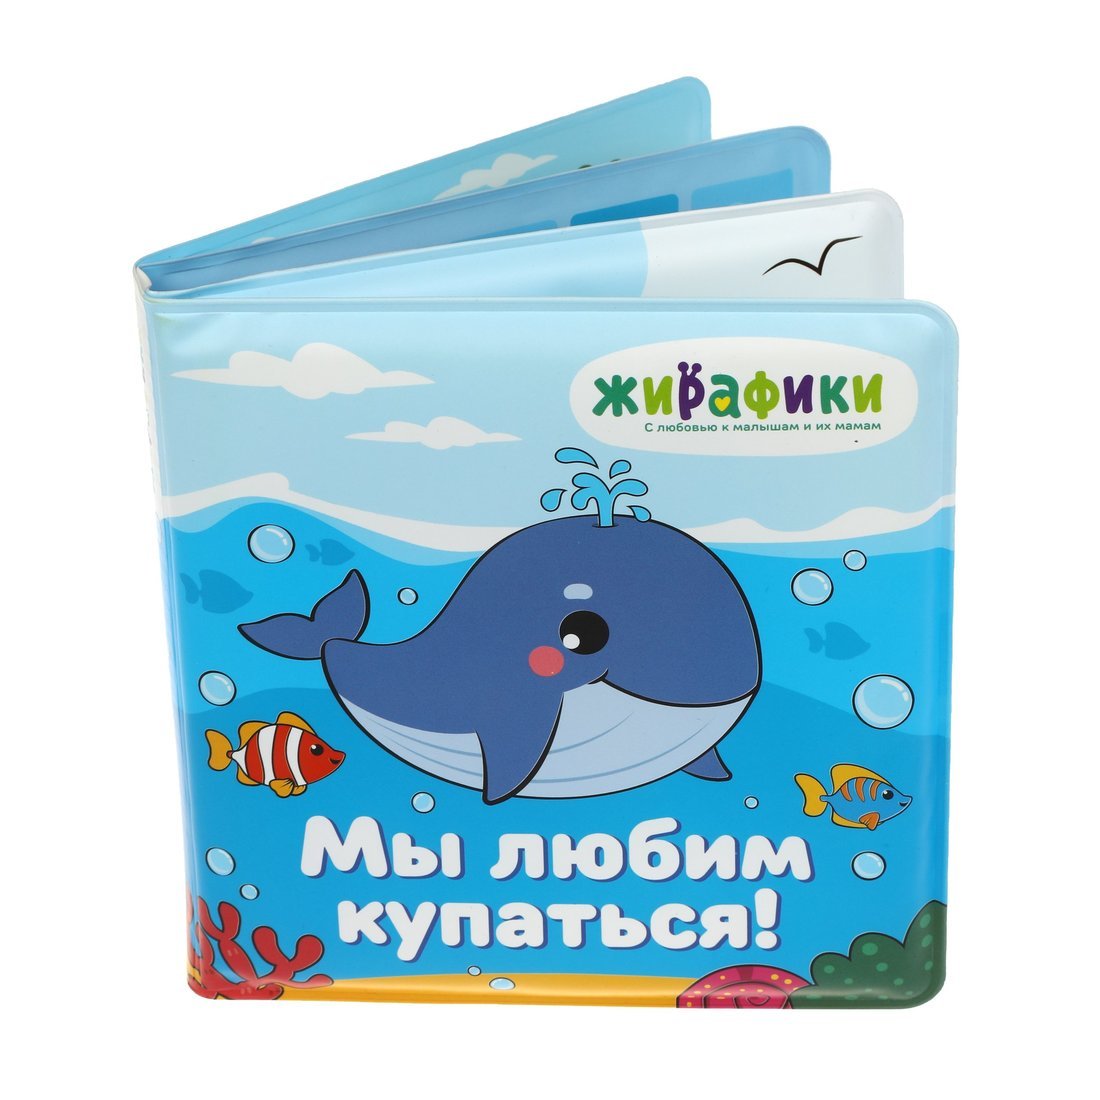 Книжка для купания 939830 Мы любим купаться 14*14см ПВХ со стишками ТМ Жирафики - Санкт-Петербург 